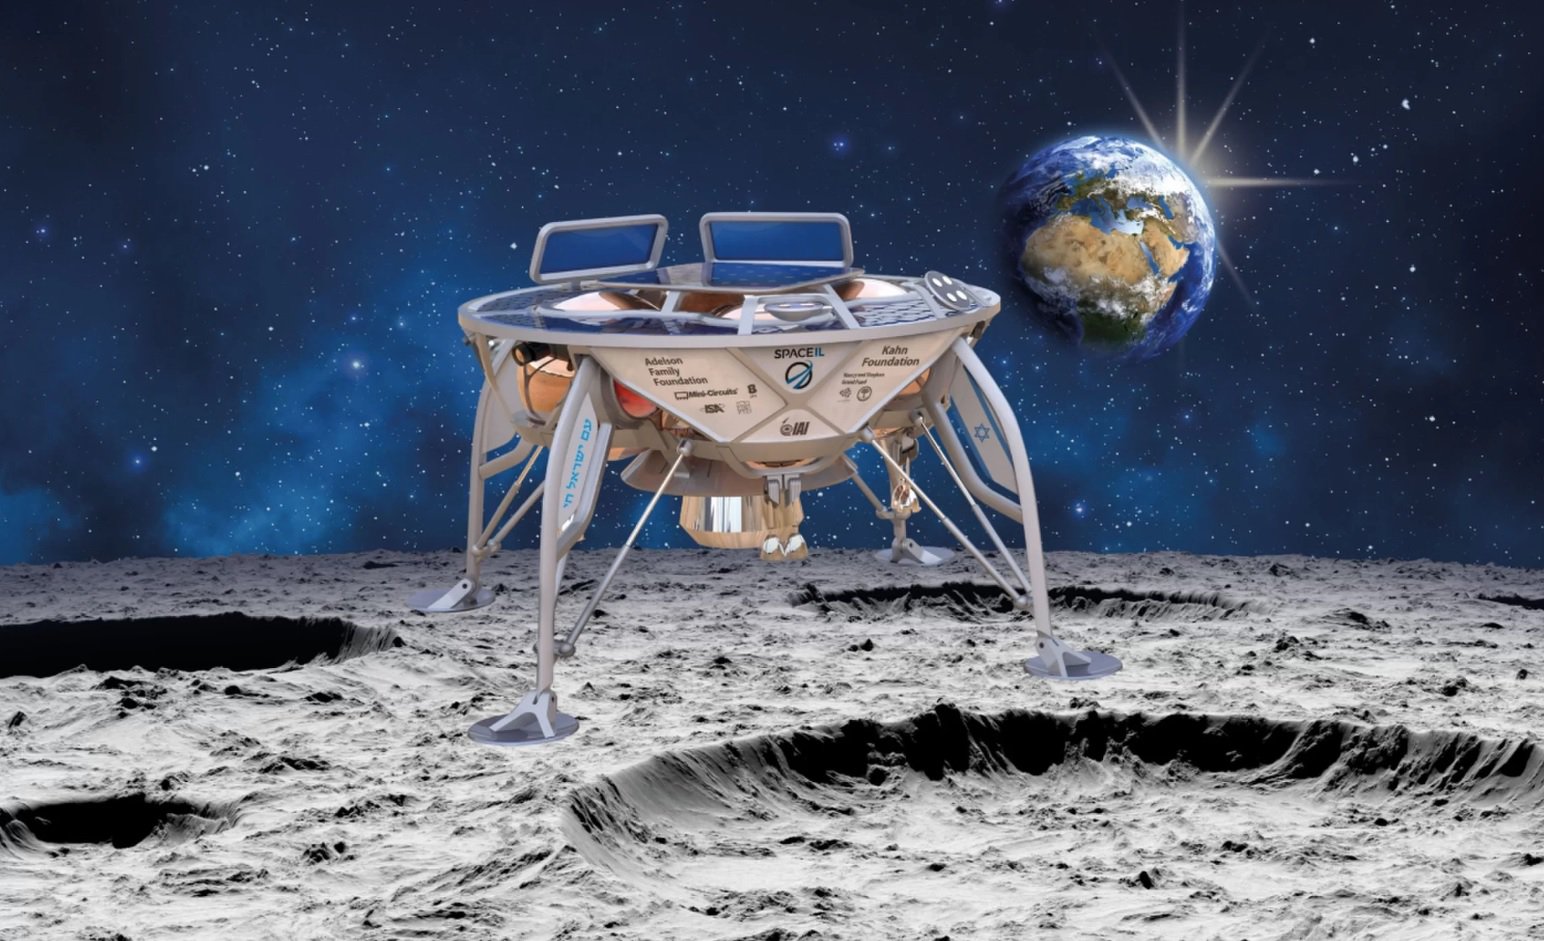 Innan slutet av detta år, Israel vill skicka till månen lander